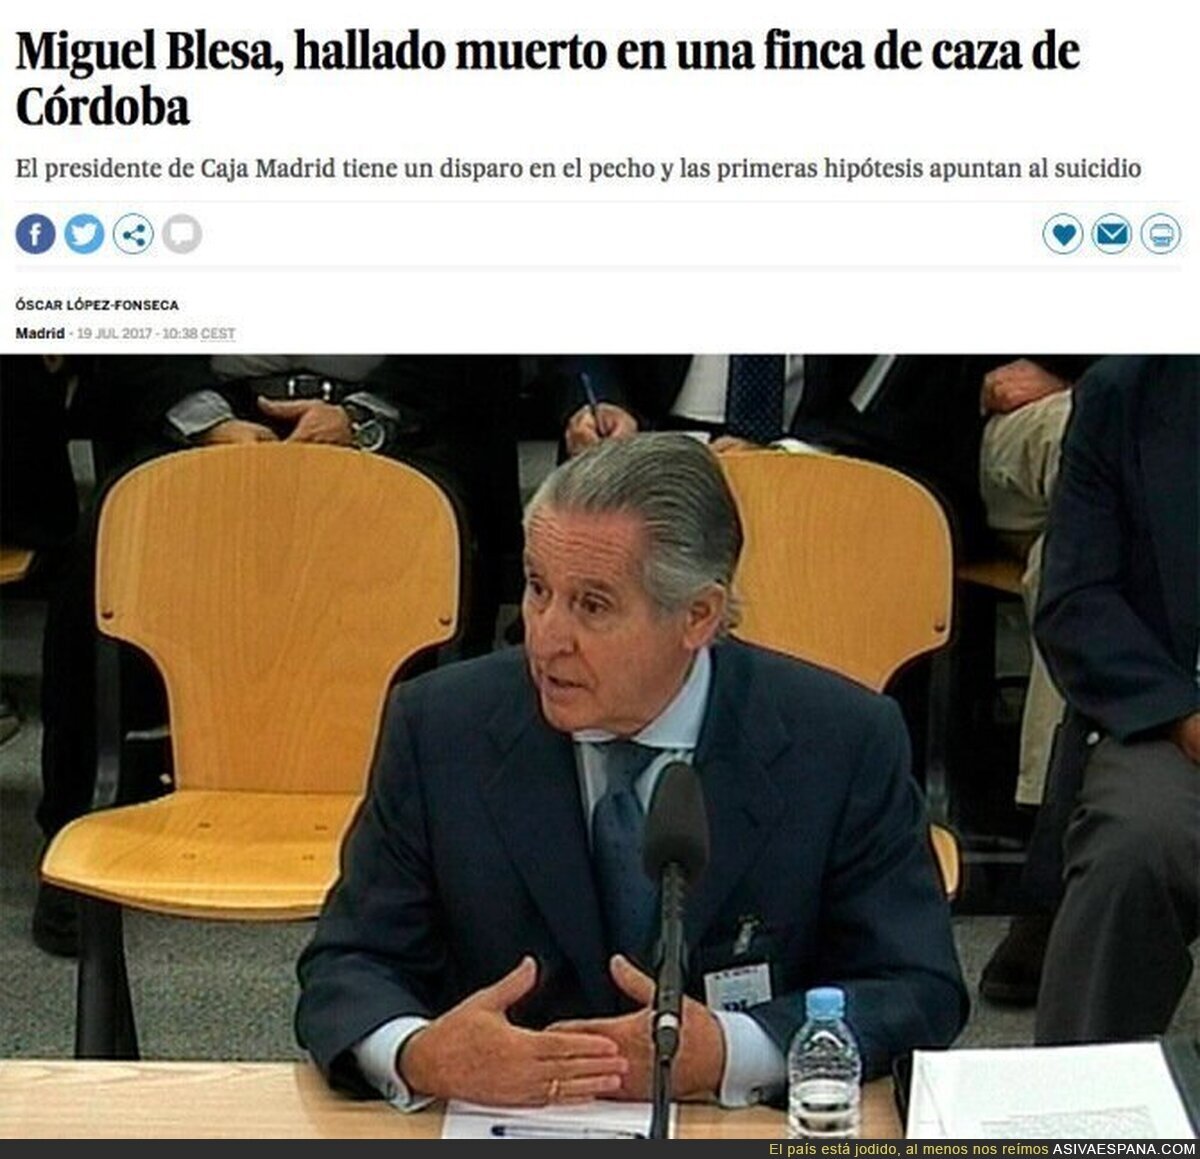 Miguel Blesa ha sido hallado muerto